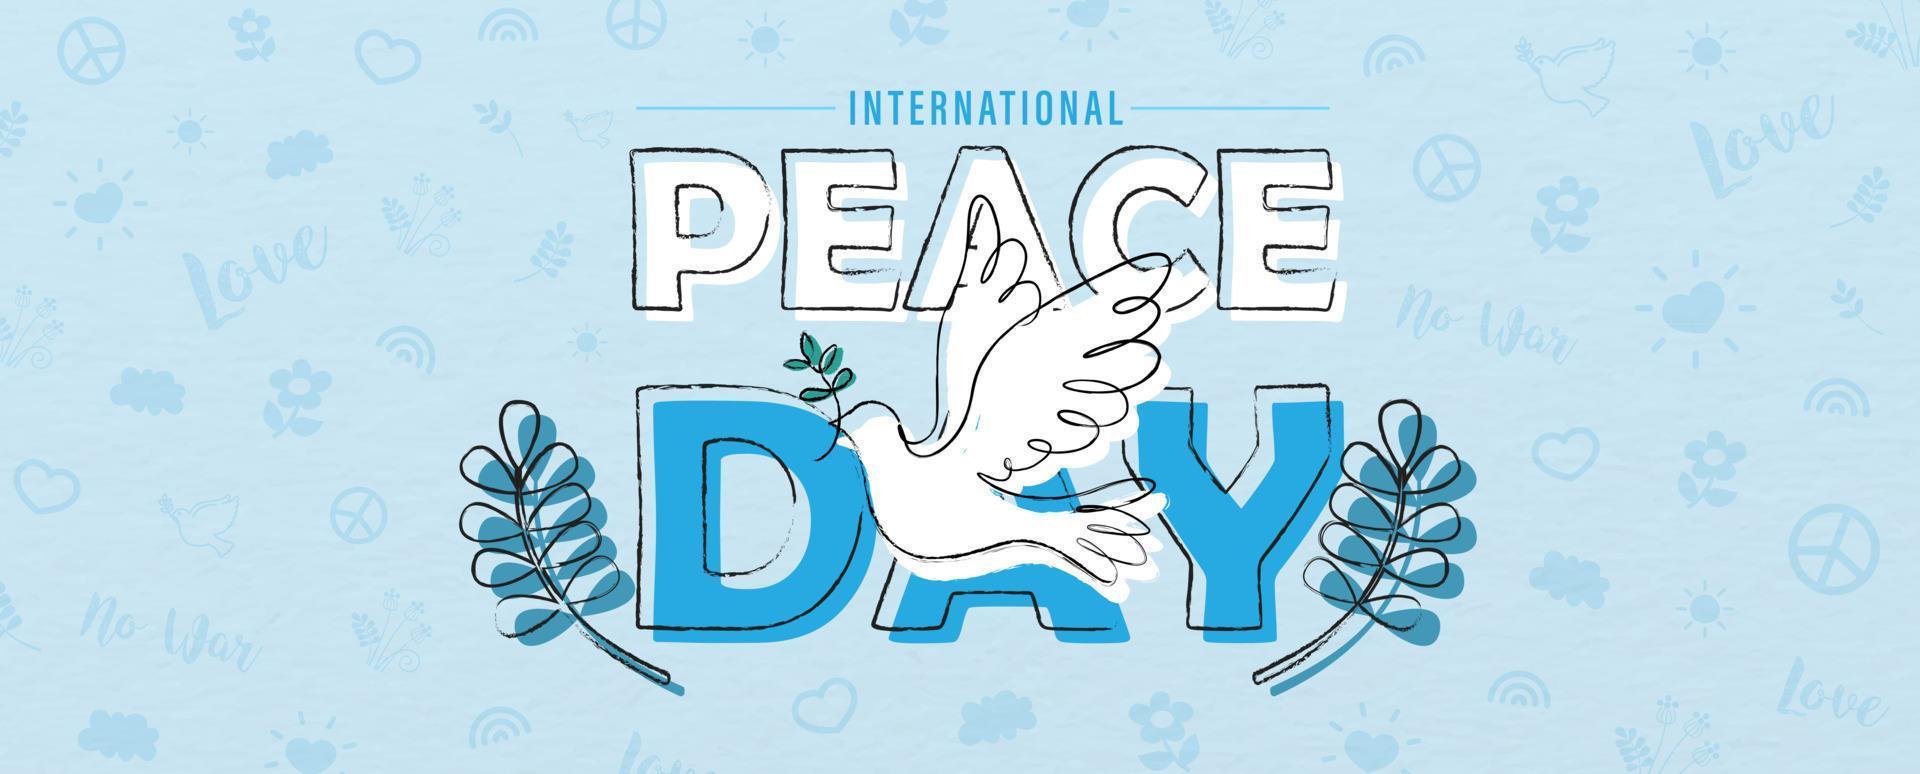 dibujo a mano y estilo de una línea en forma de paloma de la paz en el nombre de las letras del evento, plantas de olivo y patrón de objetos del día de la paz y fondo azul. vector